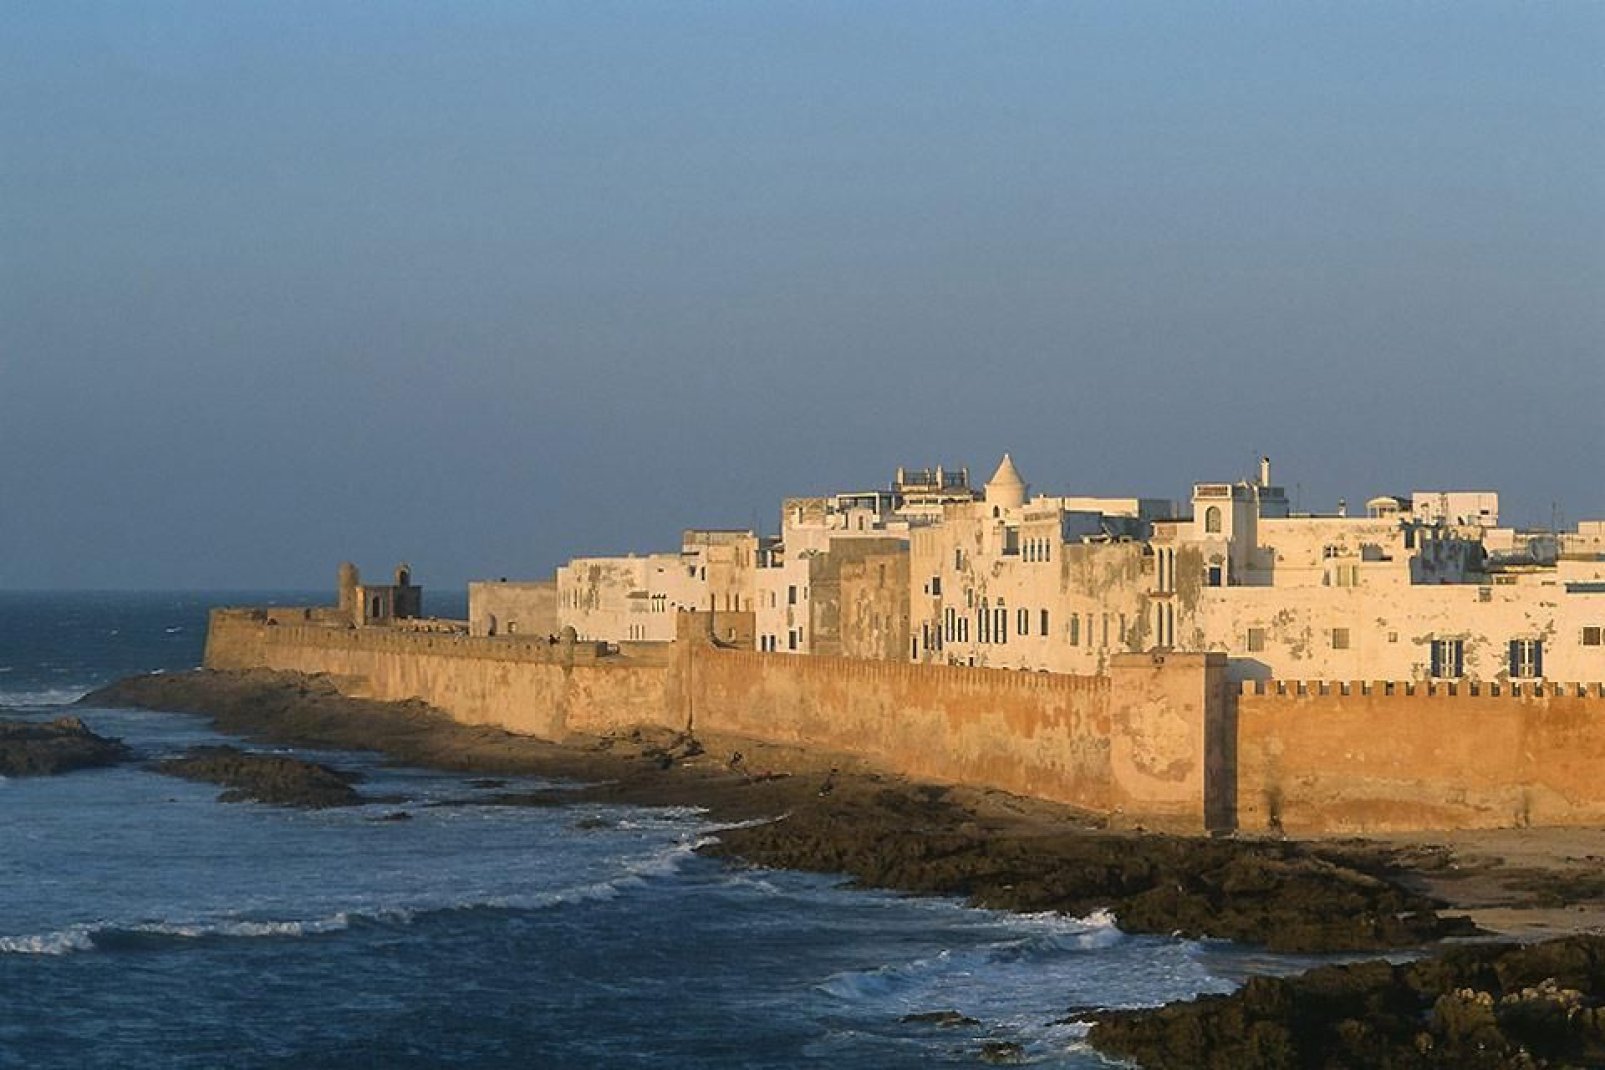 Essaouira, bella y majestuosa, ha cautivado a los visitantes desde tiempos inmemoriales. Sus murallas de color miel siguen seduciendo a todo el mundo.